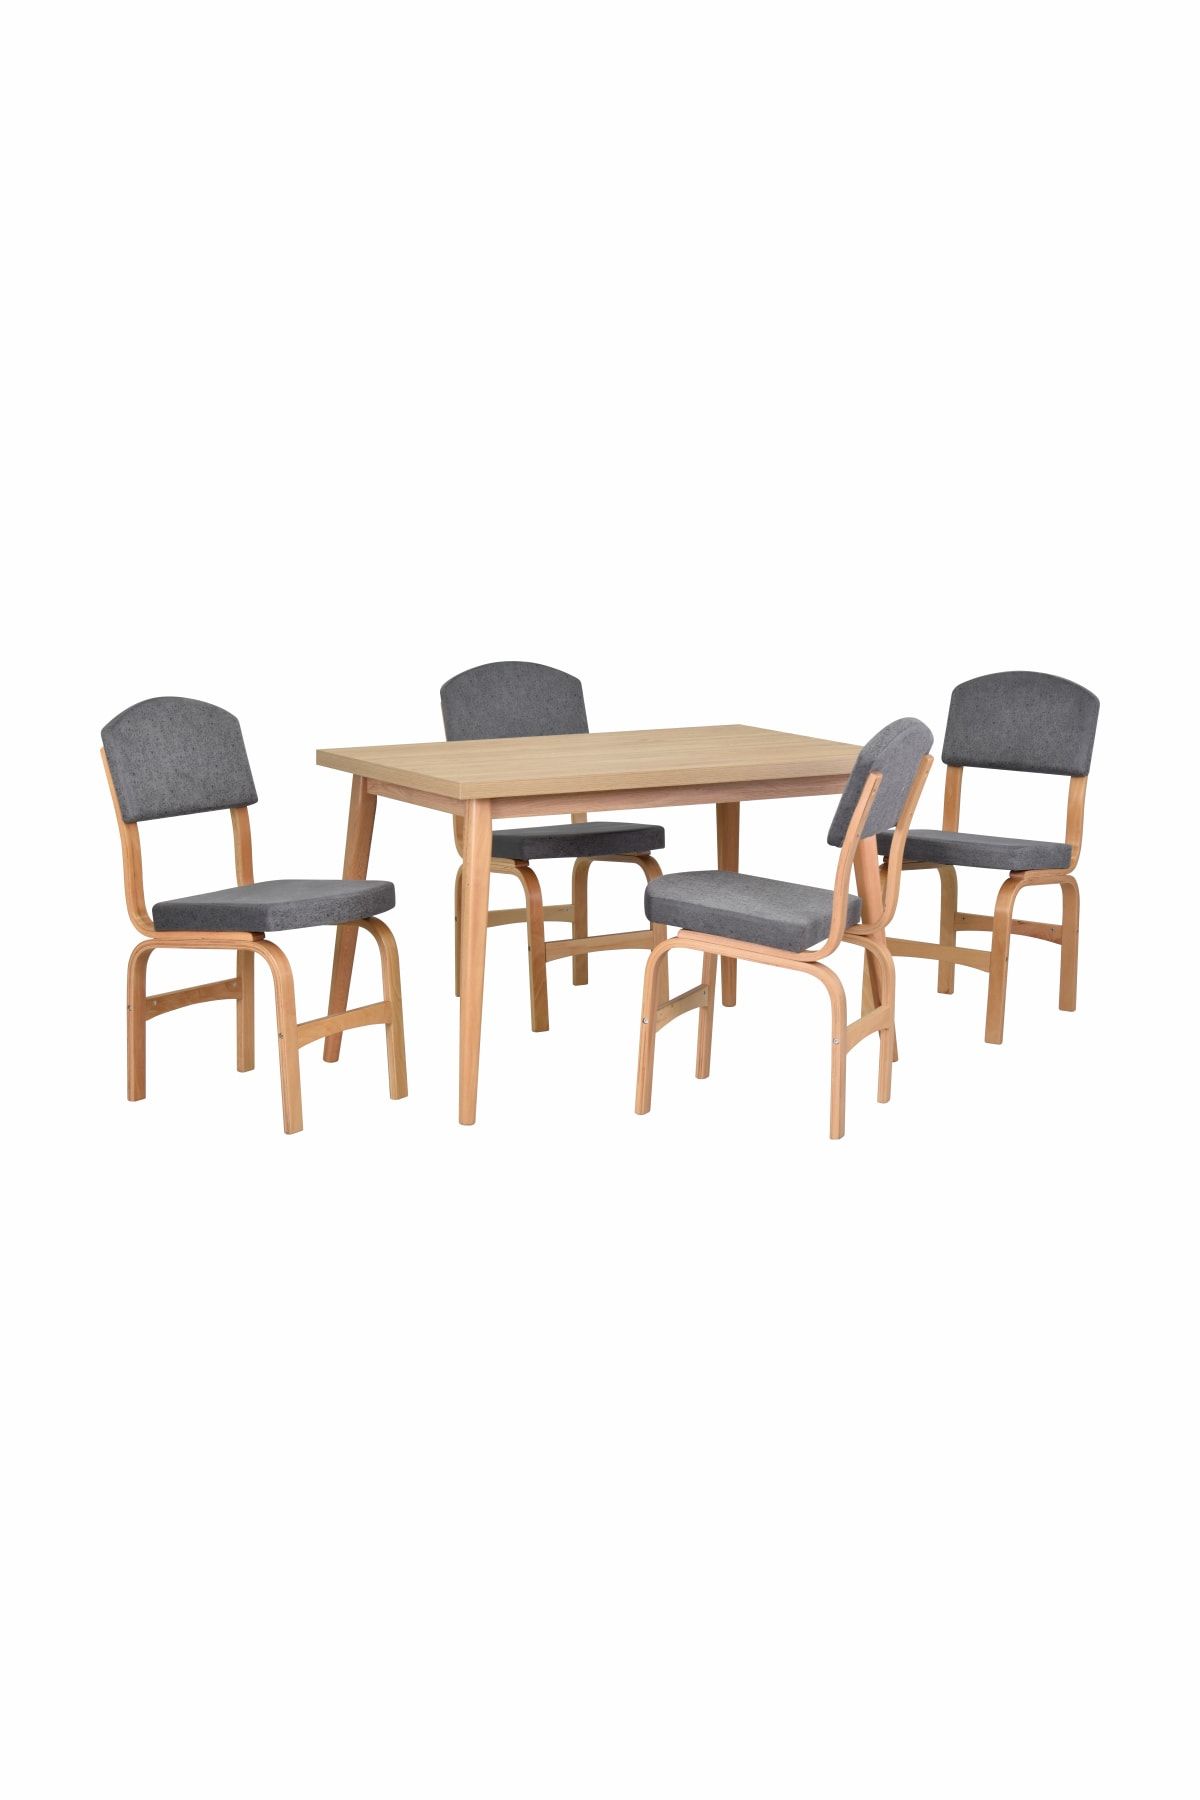 VİLİNZE Ege Sandalye Avanos Ahşap Mdf Mutfak Masası Takımı - 70x120 Cm